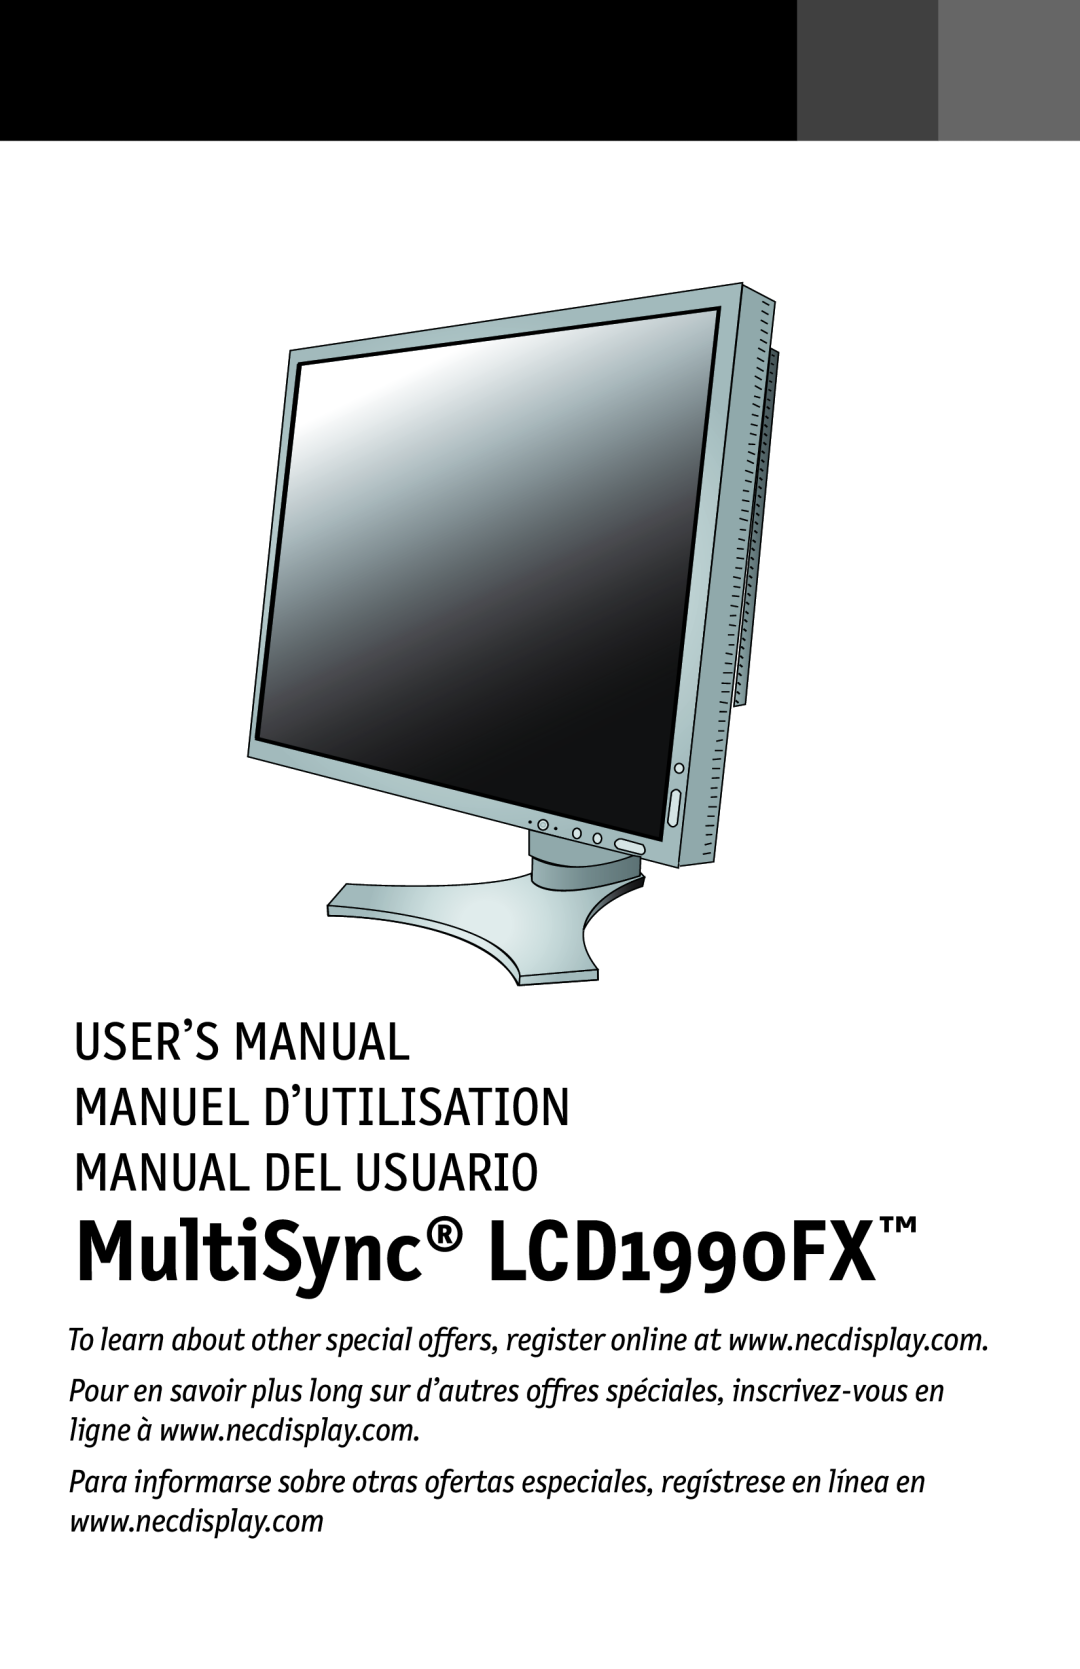 NEC LCD1990FXTM user manual MultiSync LCD1990FX, User’S Manual Manuel D’Utilisation Manual Del Usuario 